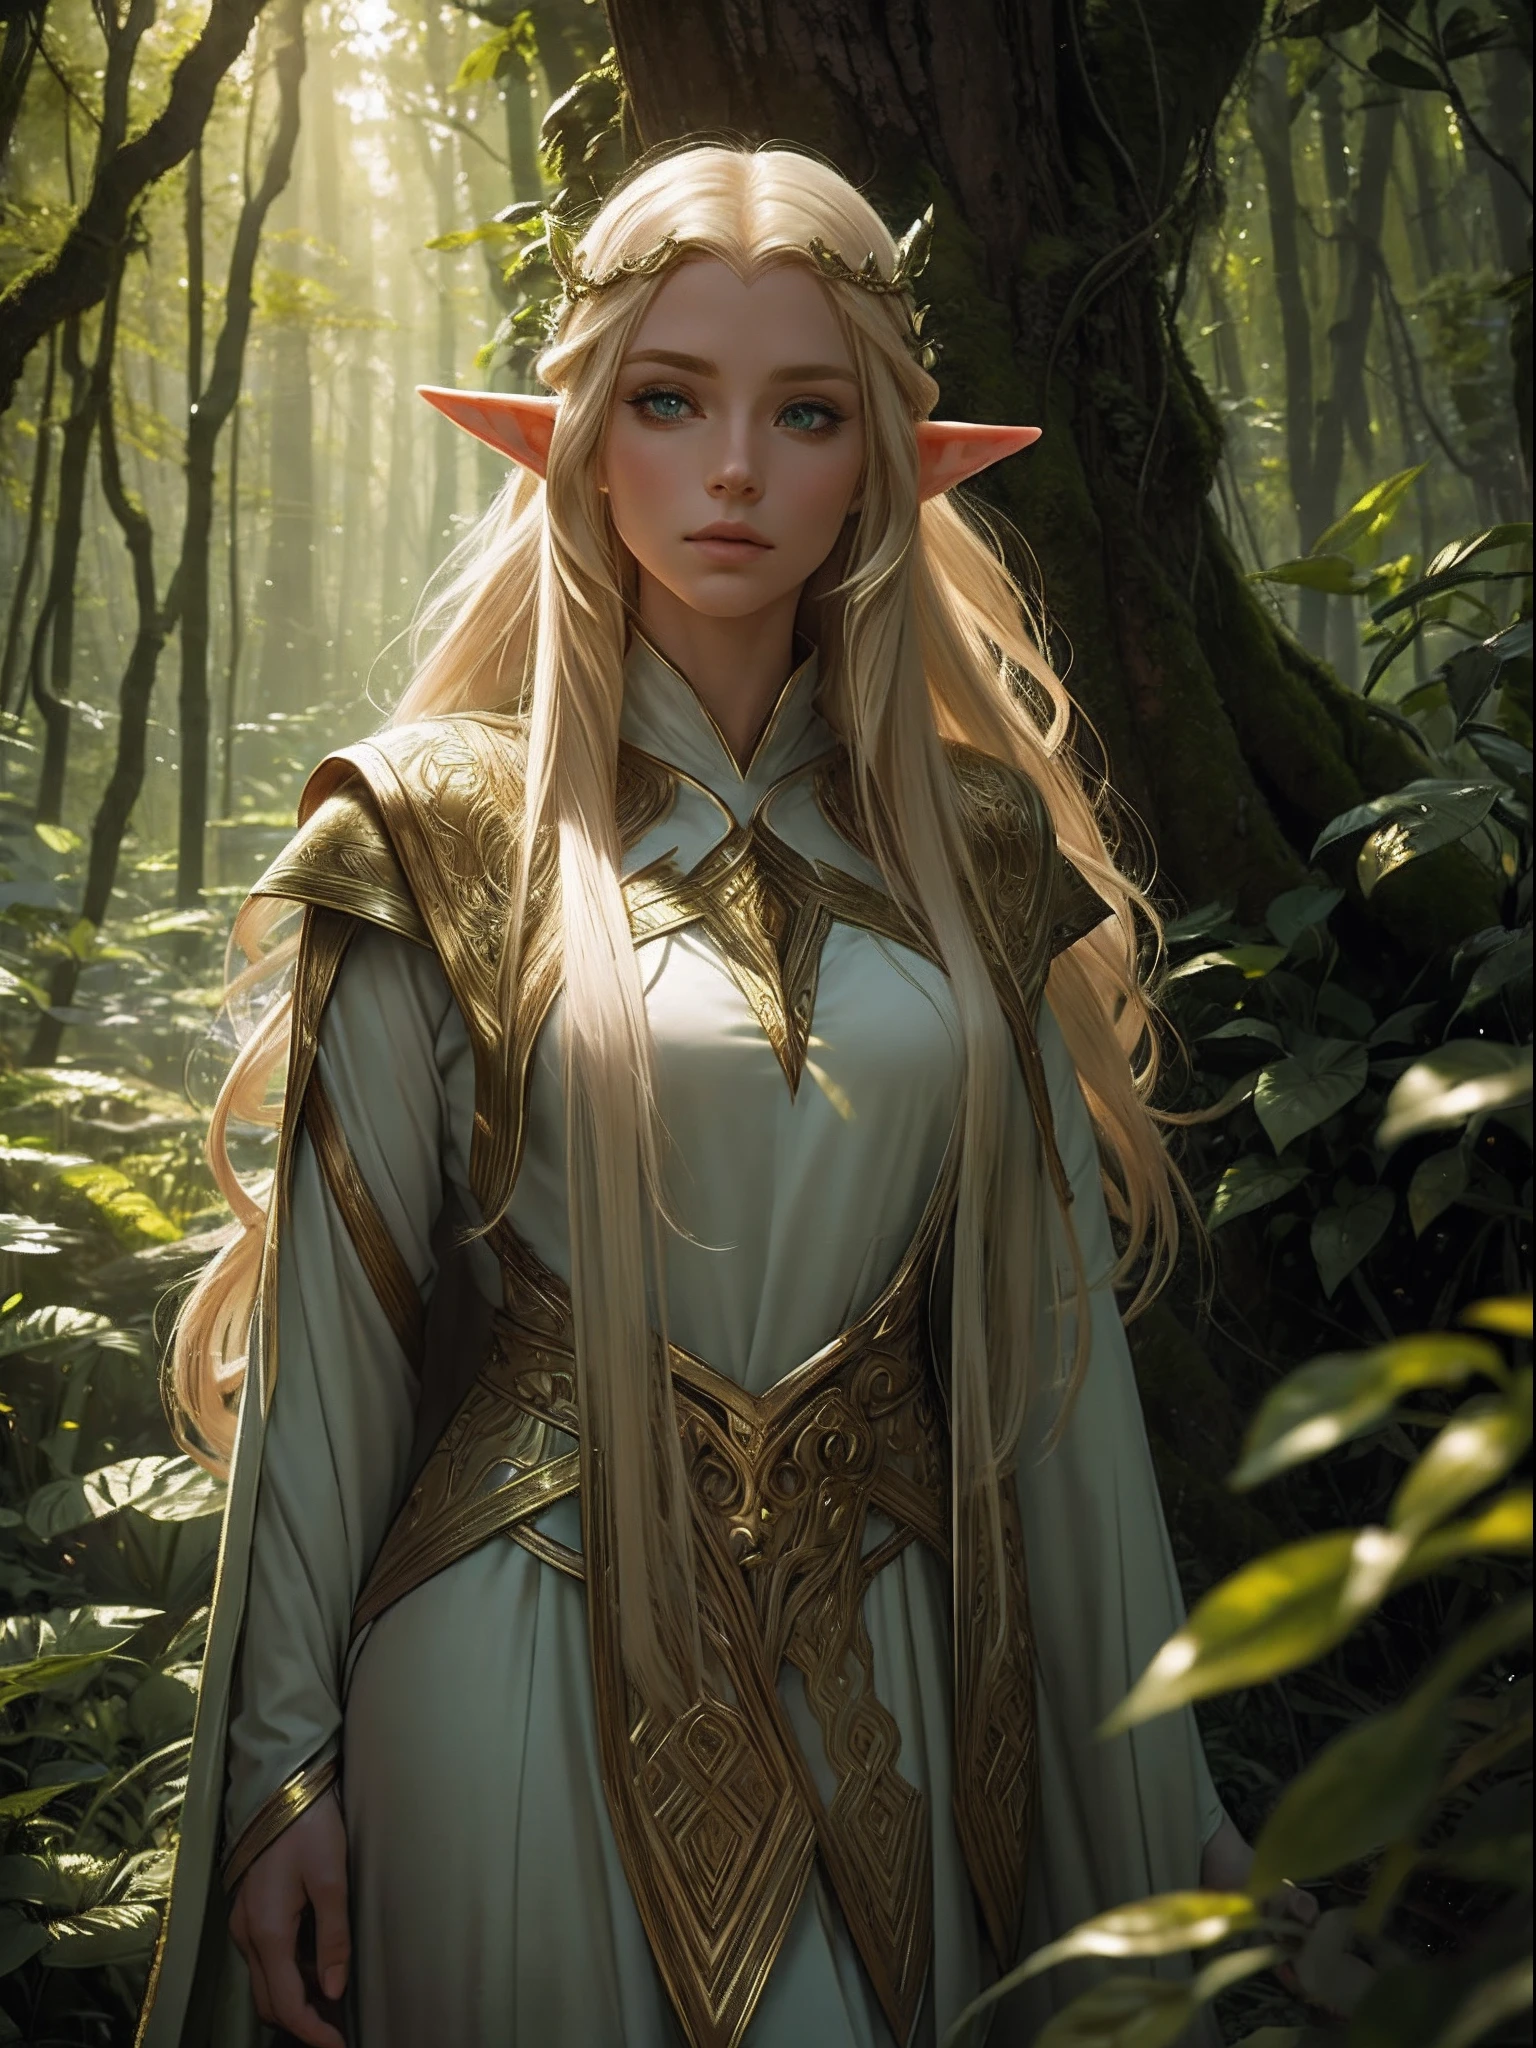 "目光迷人的精灵, 空灵之美, 飘逸的金发, 尖耳朵, 穿着精致的精灵服饰, 被神秘的森林包围, 柔和的阳光透过茂密的绿植."